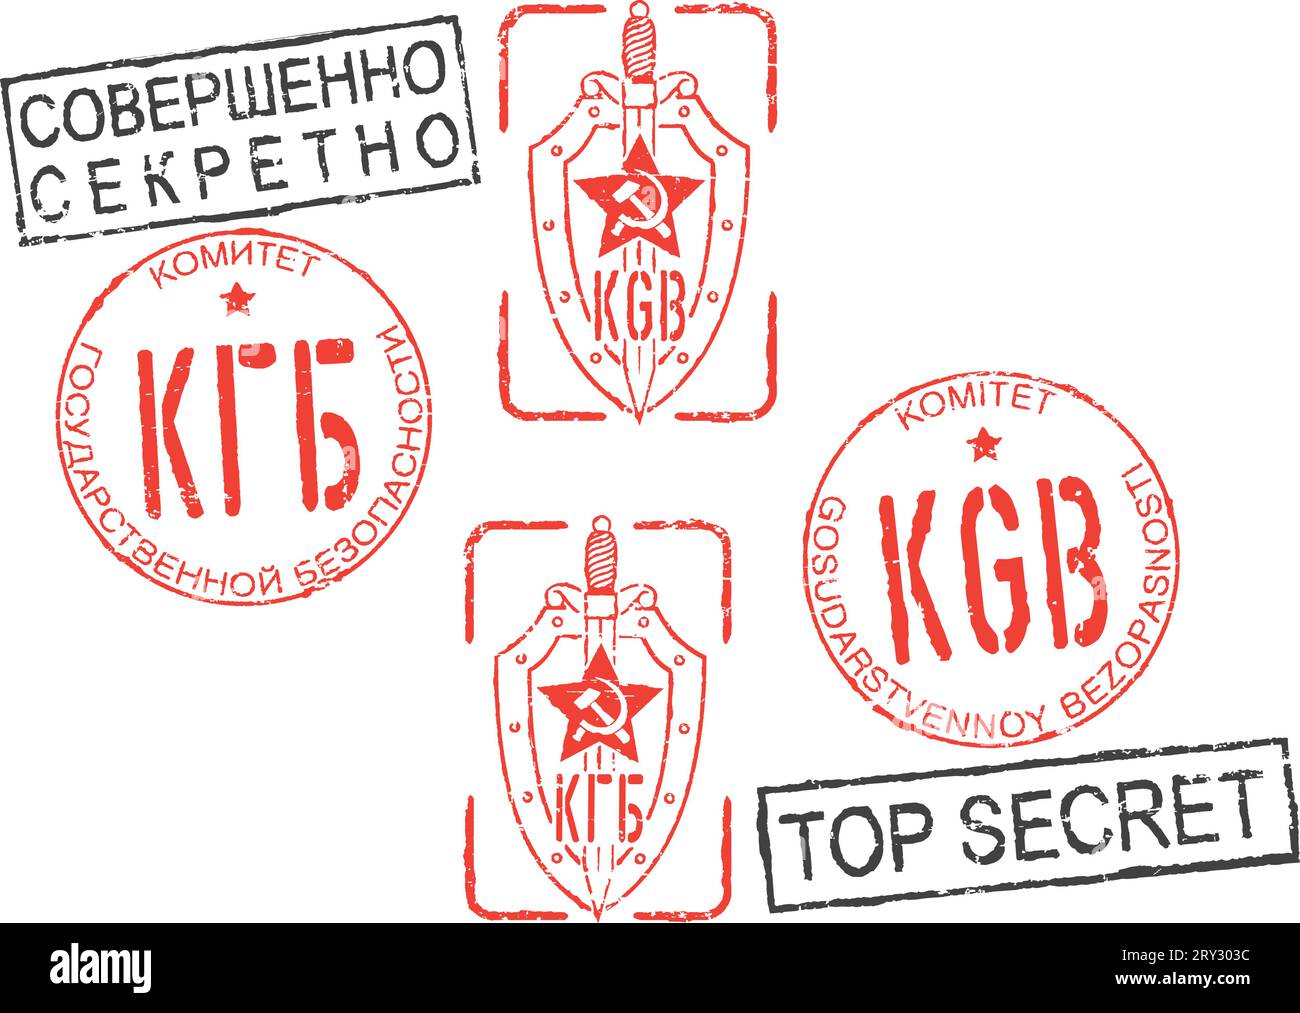 Série de timbres KGB (Comité pour la sécurité de l'État) et TOP SECRET. Inscription russe (cyrillique) et anglaise. Fond blanc. Illustration de Vecteur